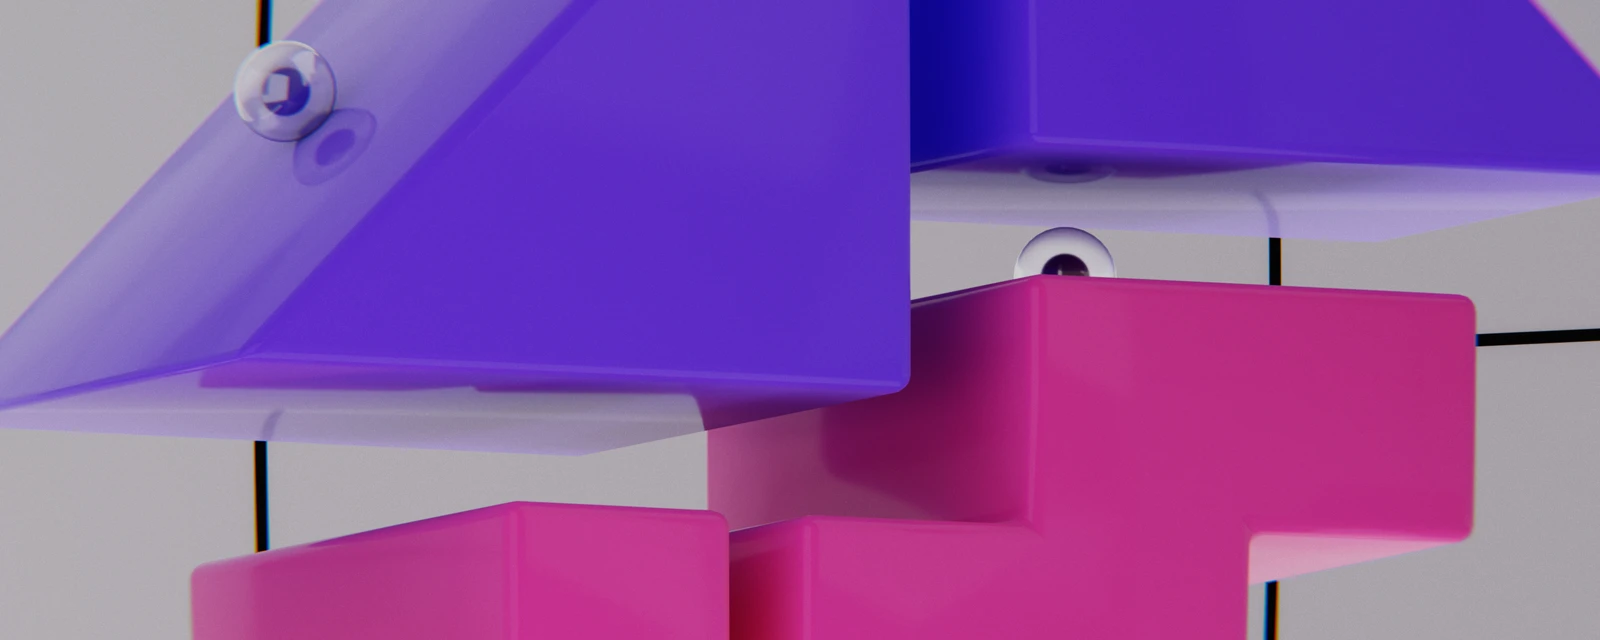 Titelbild zum Thema Barrierefreiheit zeigt einen Ausschnitt verschiedener geometrischer Formen in unseren Markenfarben Violett und Pink.